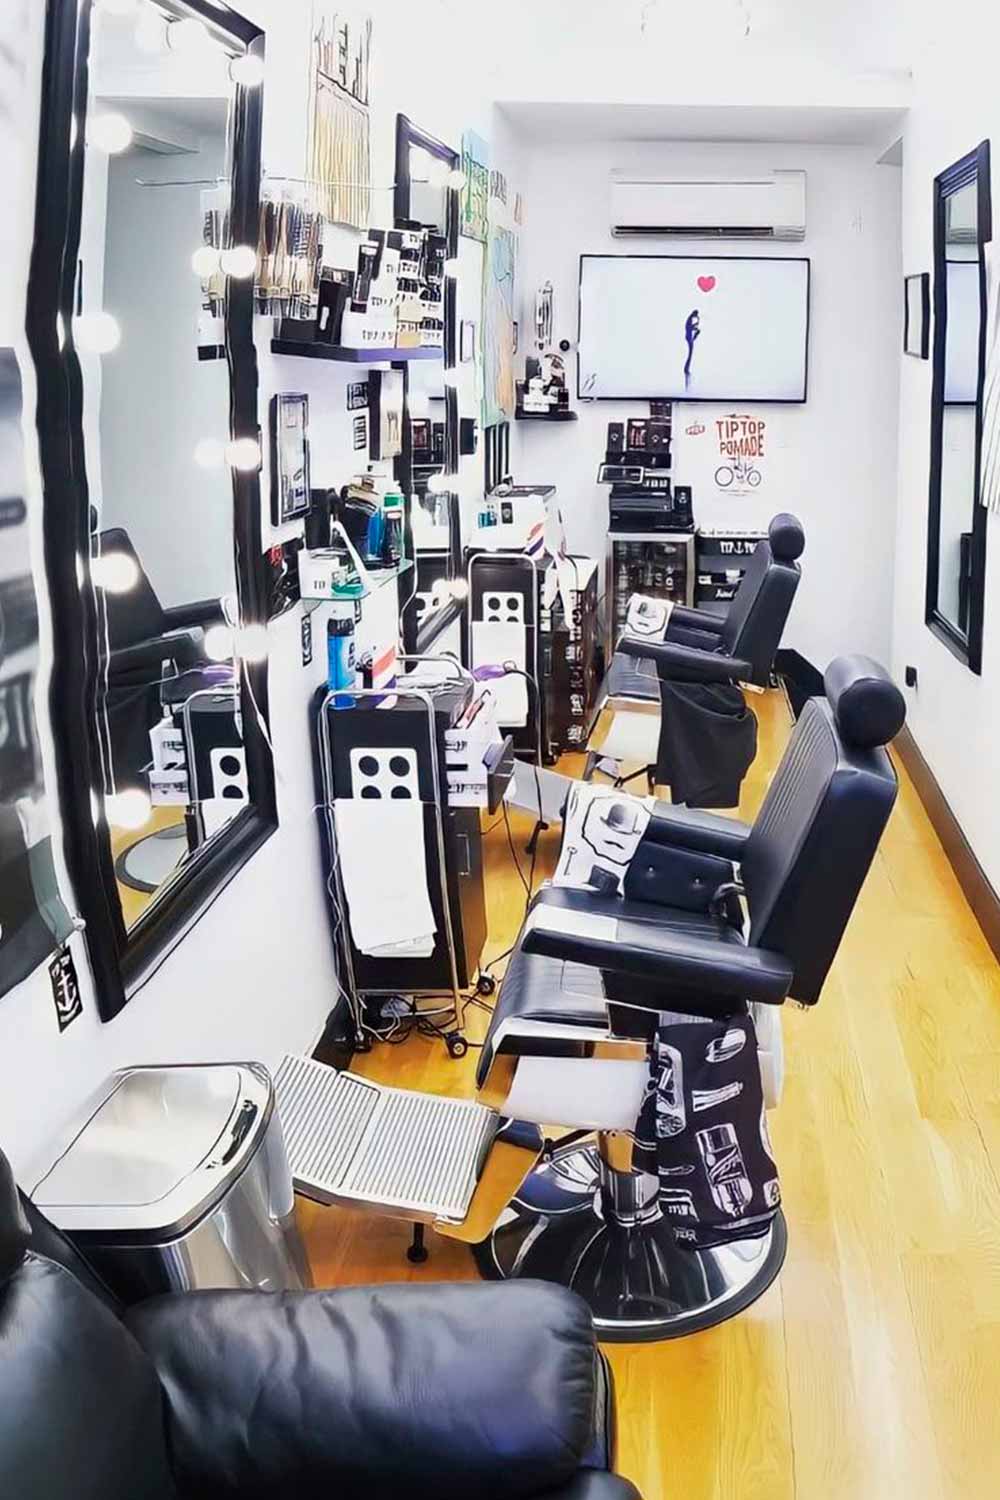 Gentlemen's Barbershop